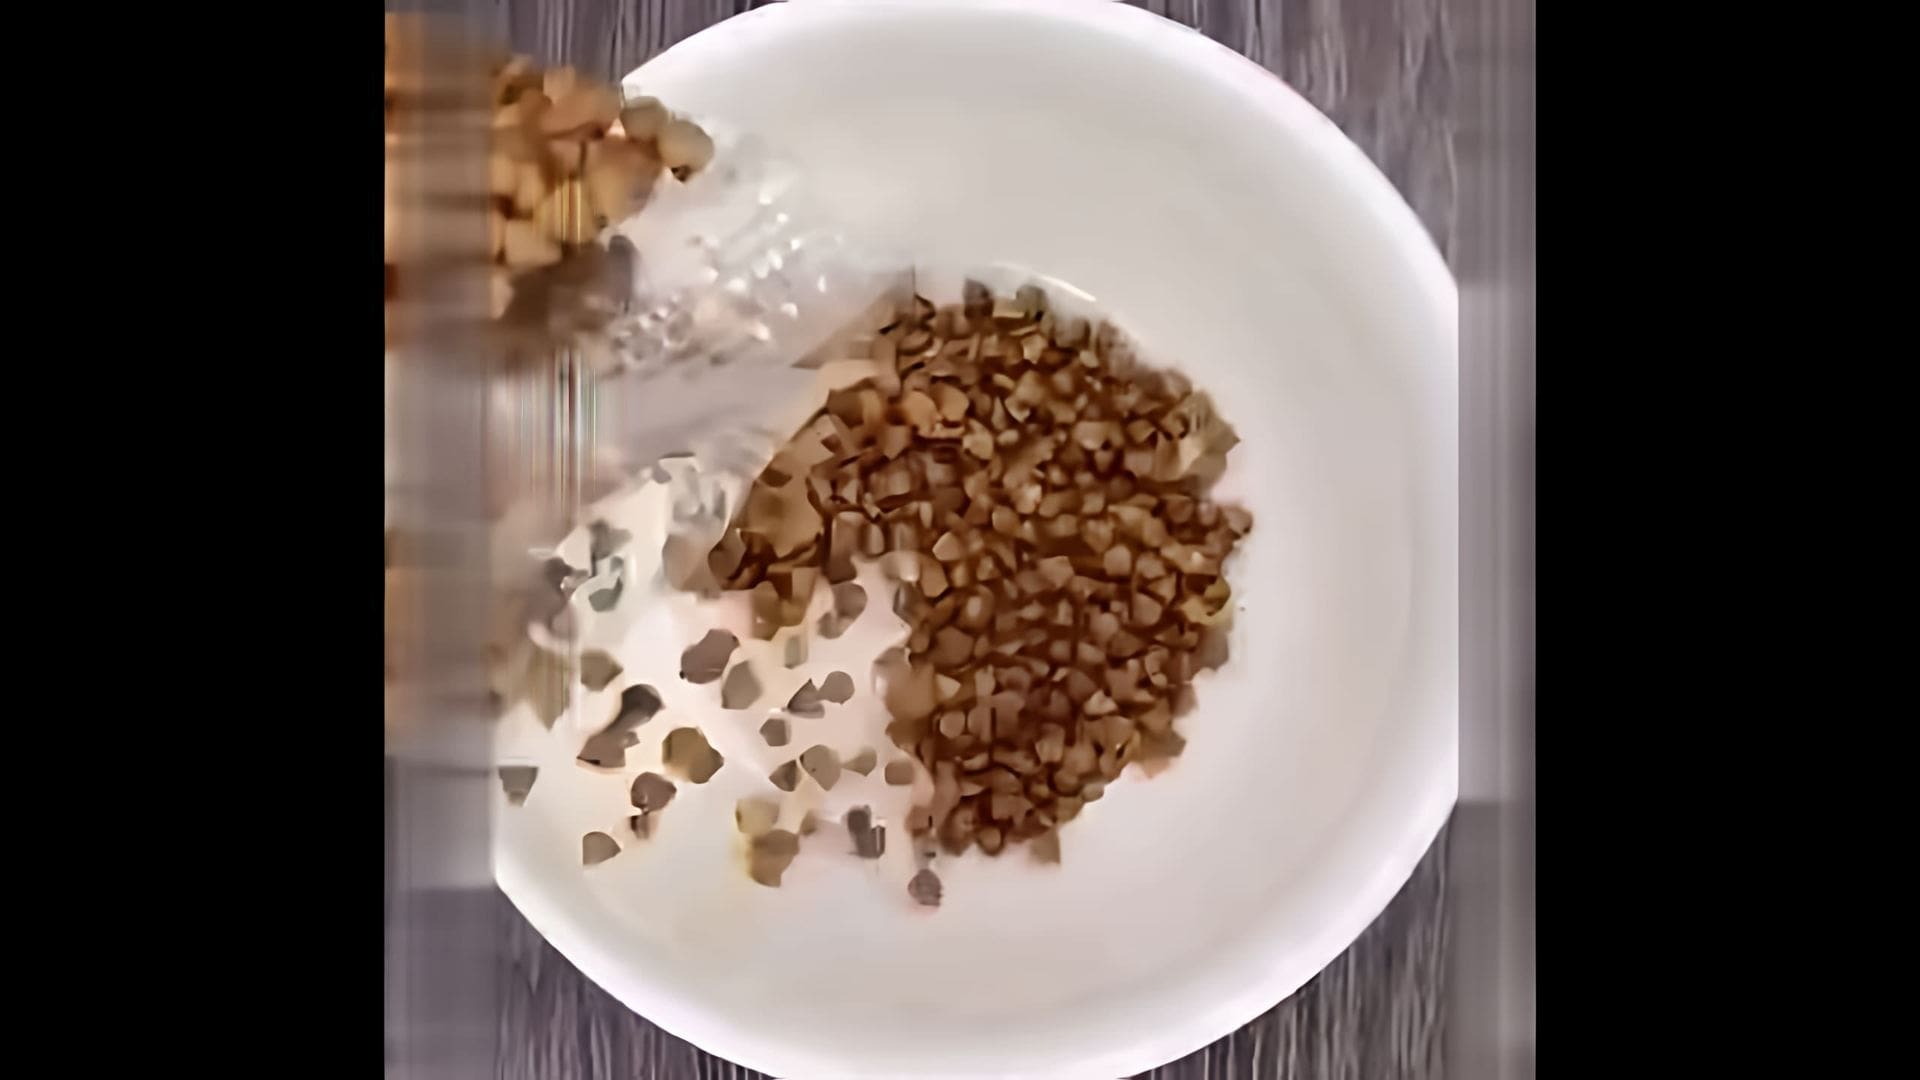 "Поп Корн из гречки" - это видео-ролик, который демонстрирует процесс приготовления попкорна из гречки